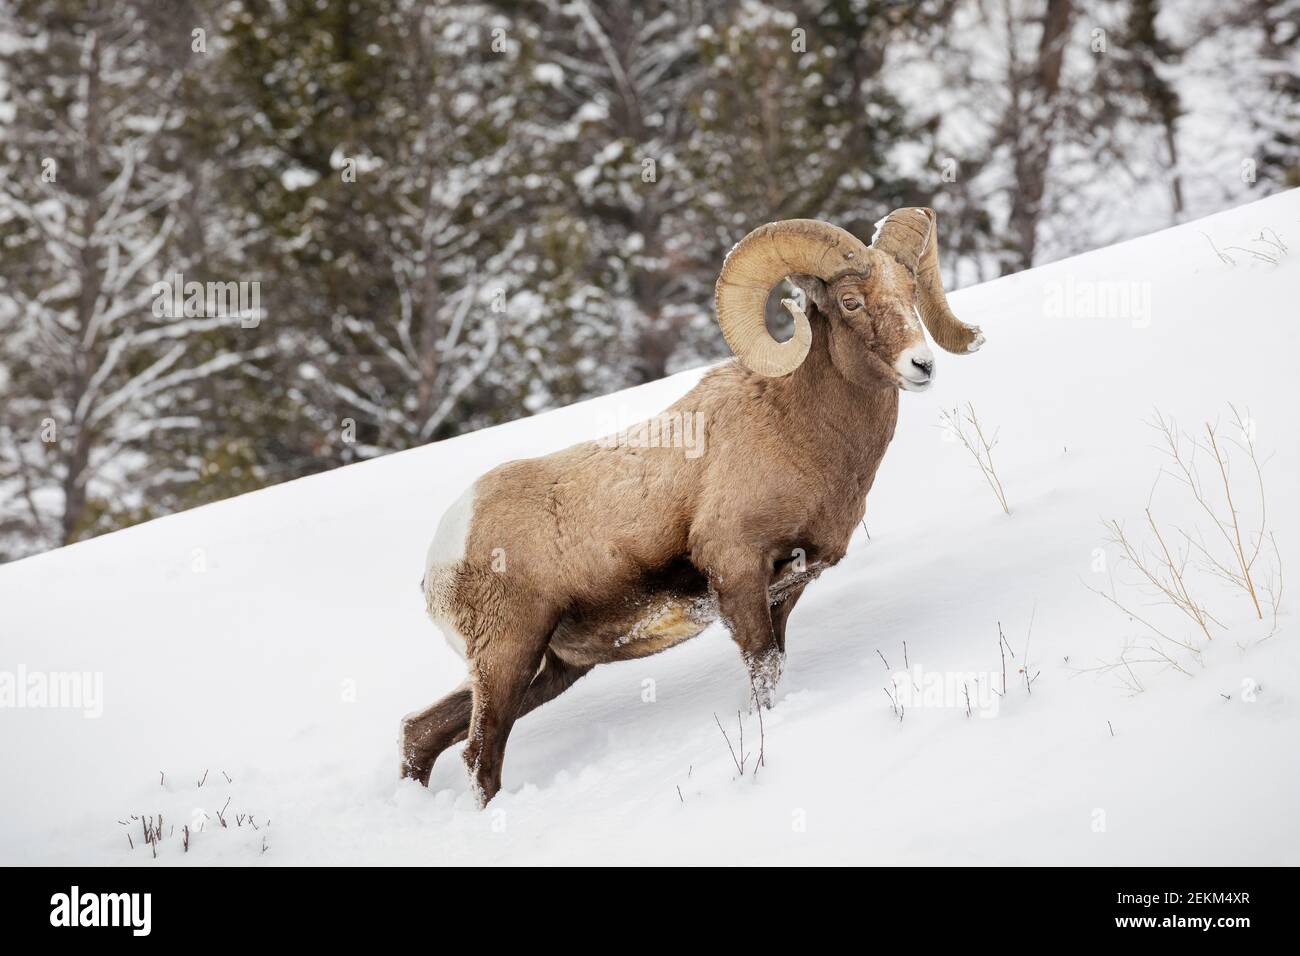 Parc national de Yellowstone, Wyoming : RAM de Bighorn (Ovis canadensis) en hiver Banque D'Images